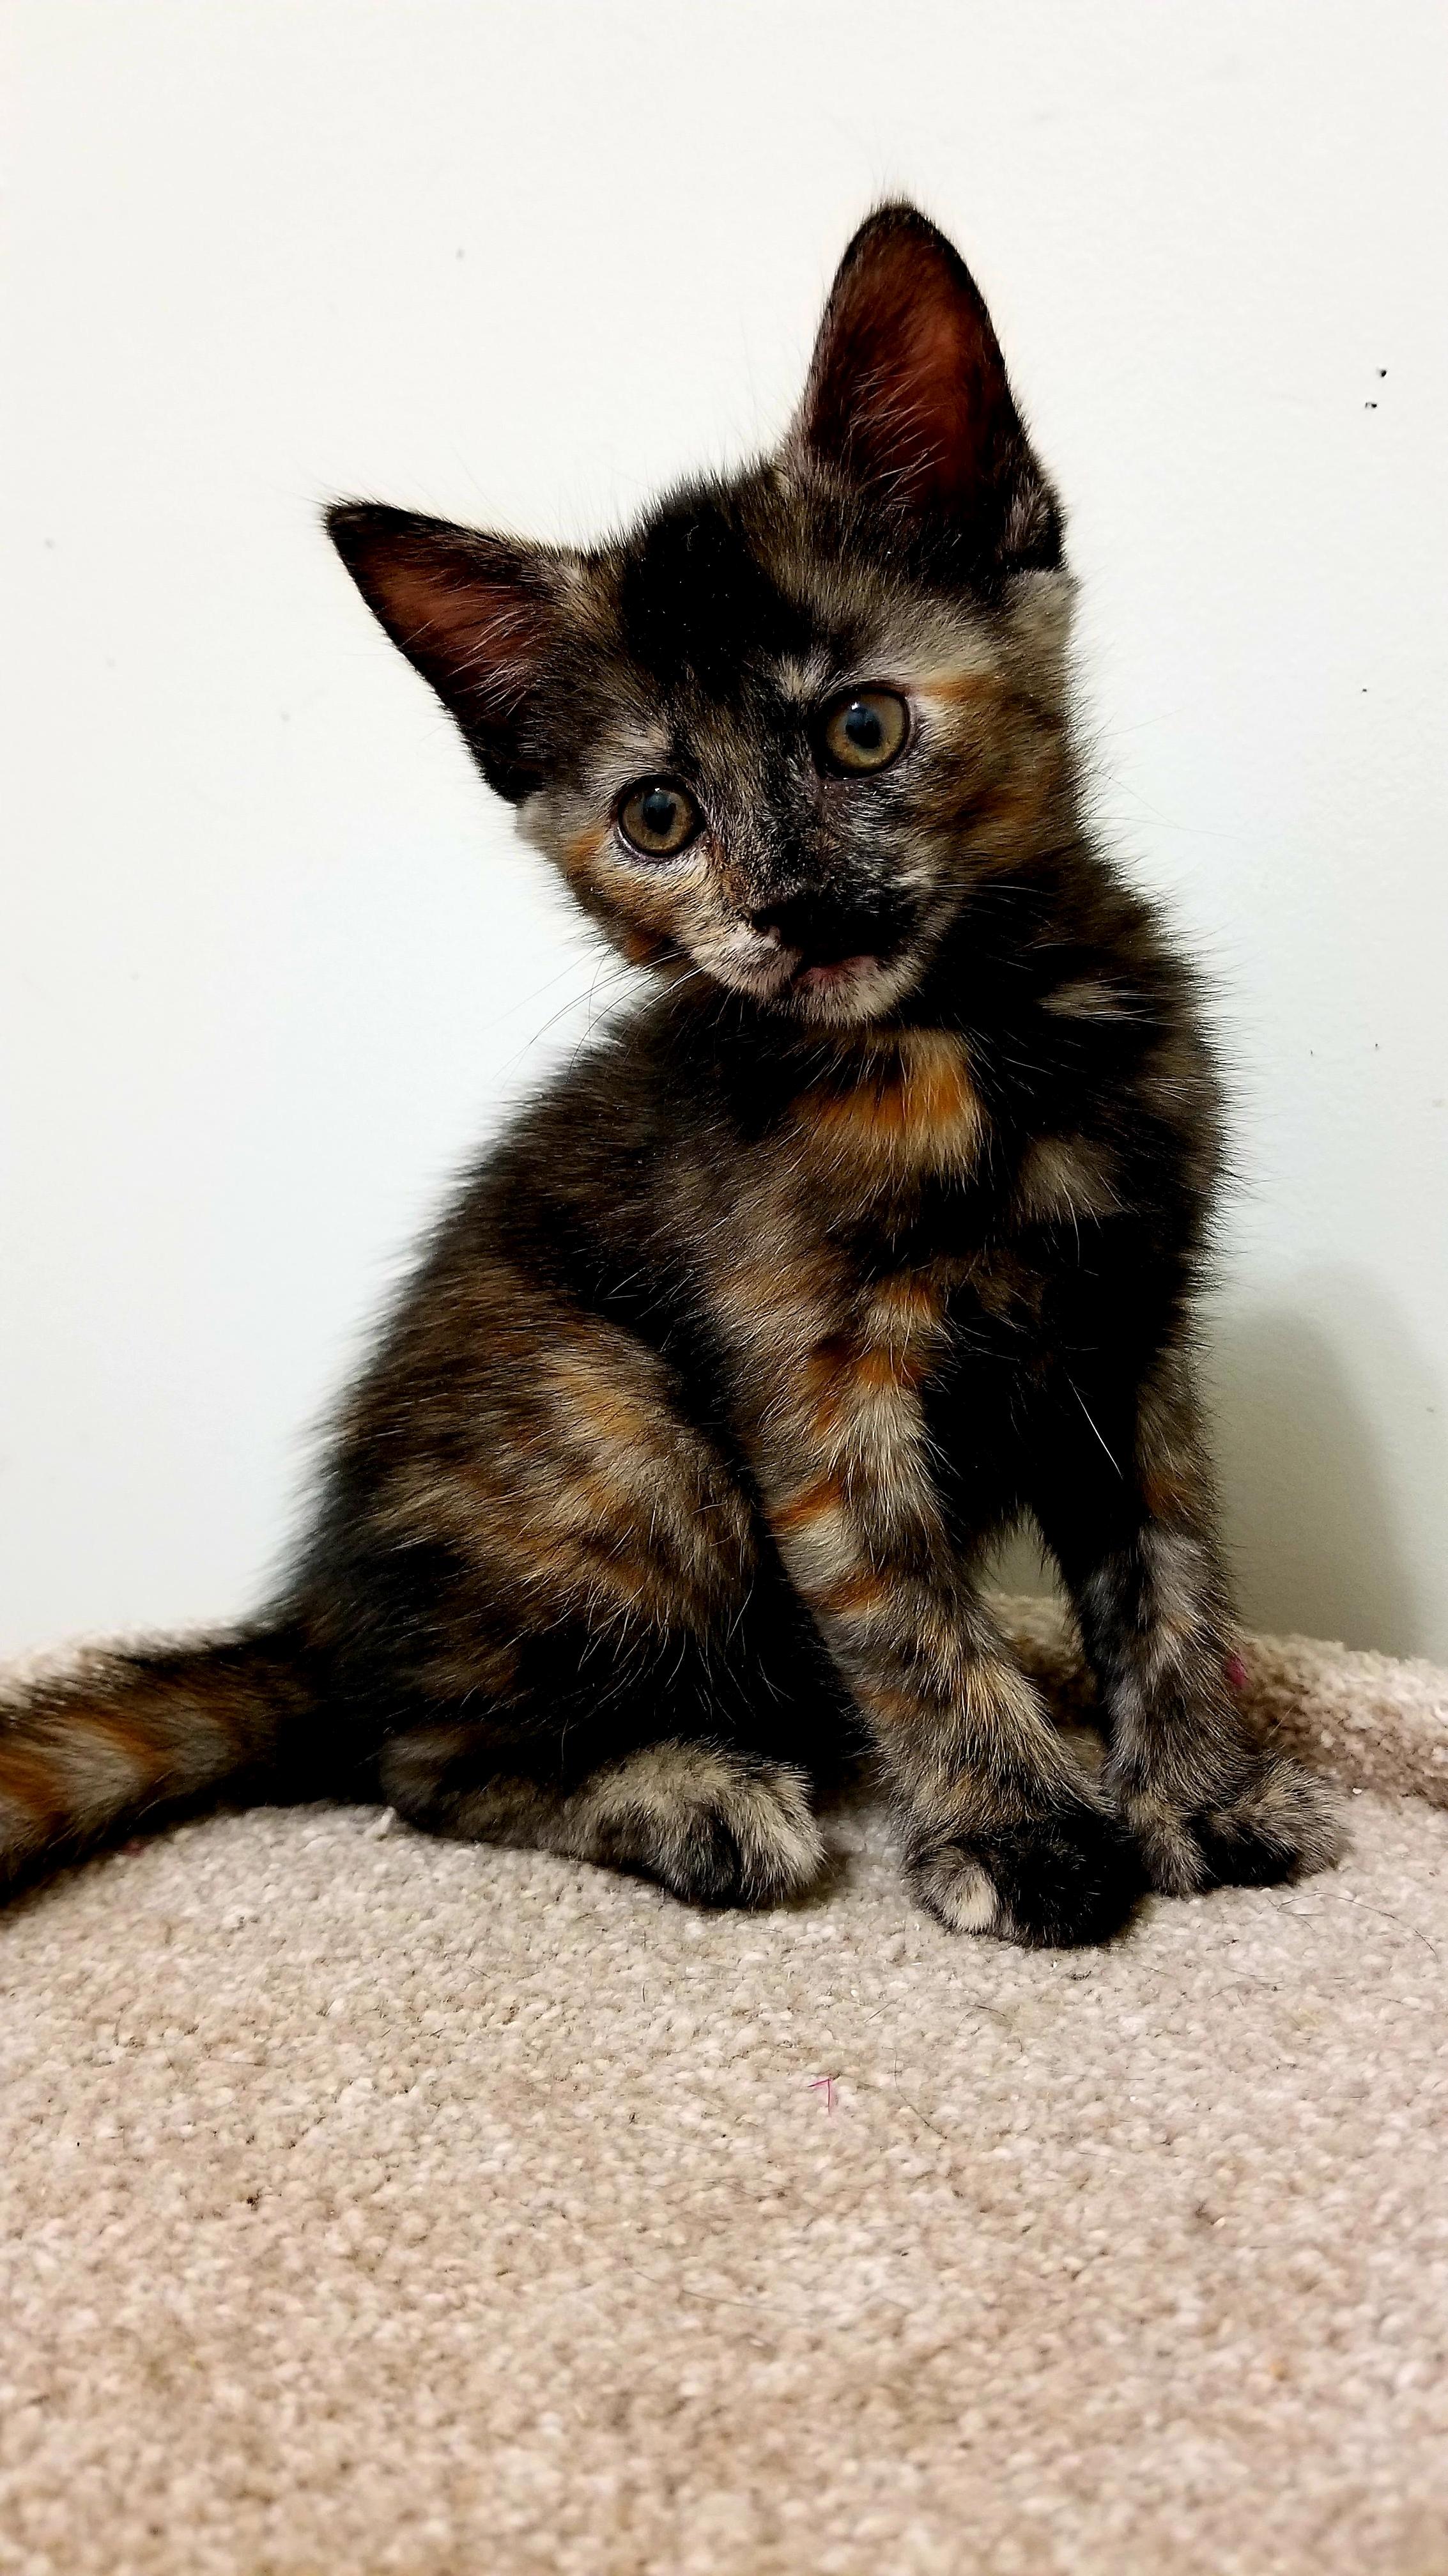 Betty, the tiny princess cat